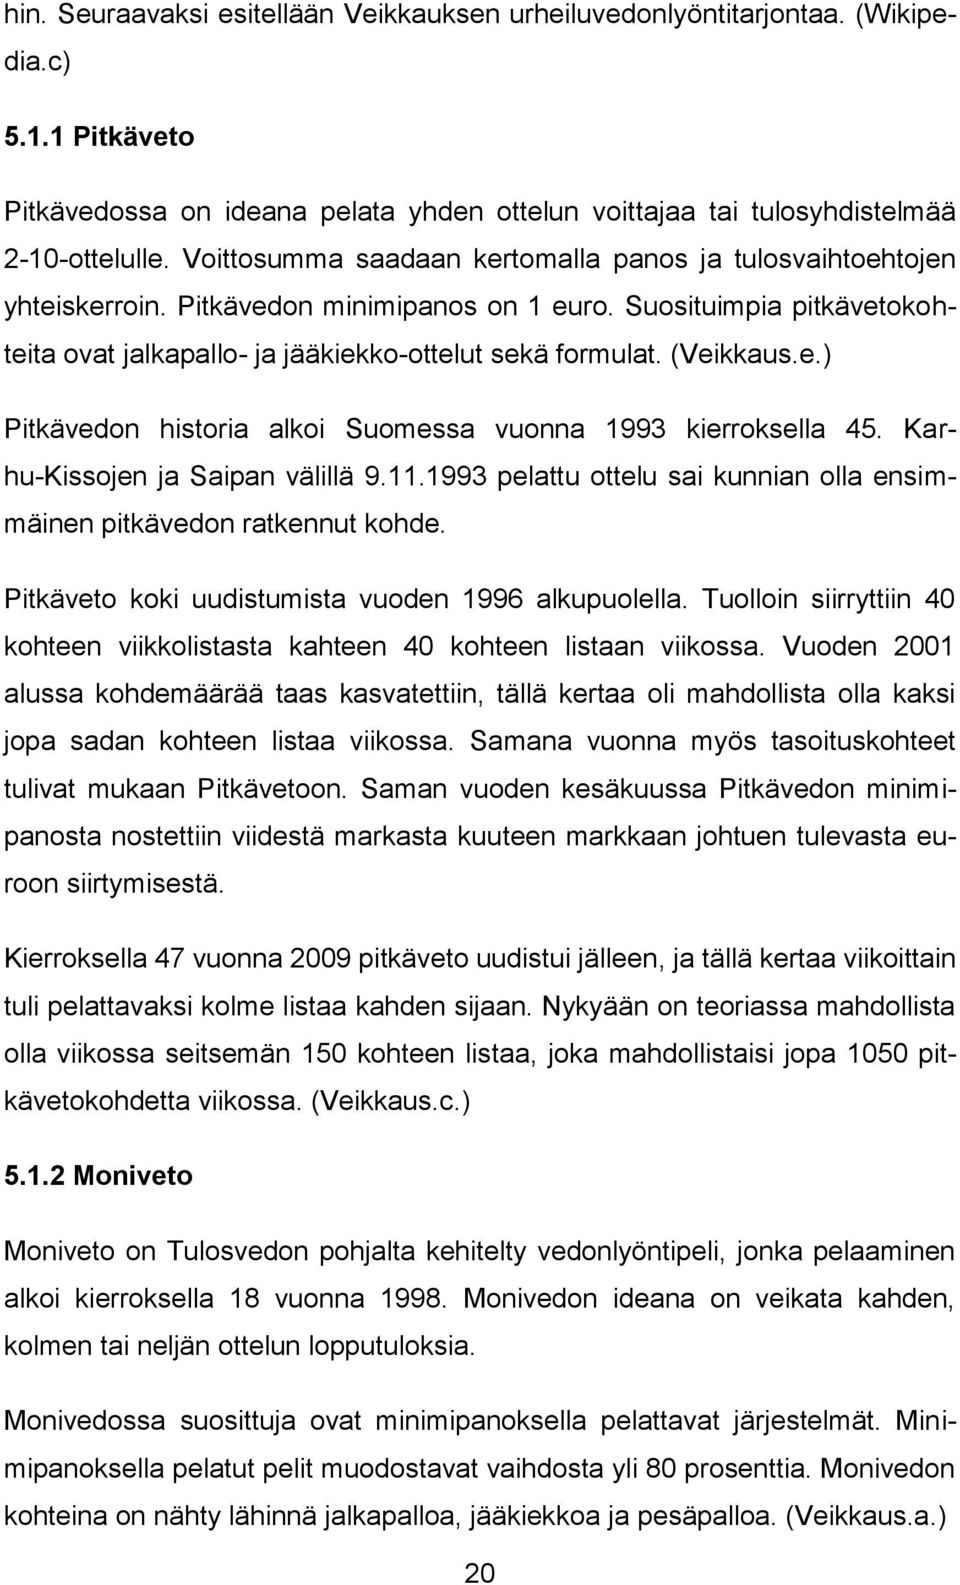 (Veikkaus.e.) Pitkävedon historia alkoi Suomessa vuonna 1993 kierroksella 45. Karhu-Kissojen ja Saipan välillä 9.11.1993 pelattu ottelu sai kunnian olla ensimmäinen pitkävedon ratkennut kohde.